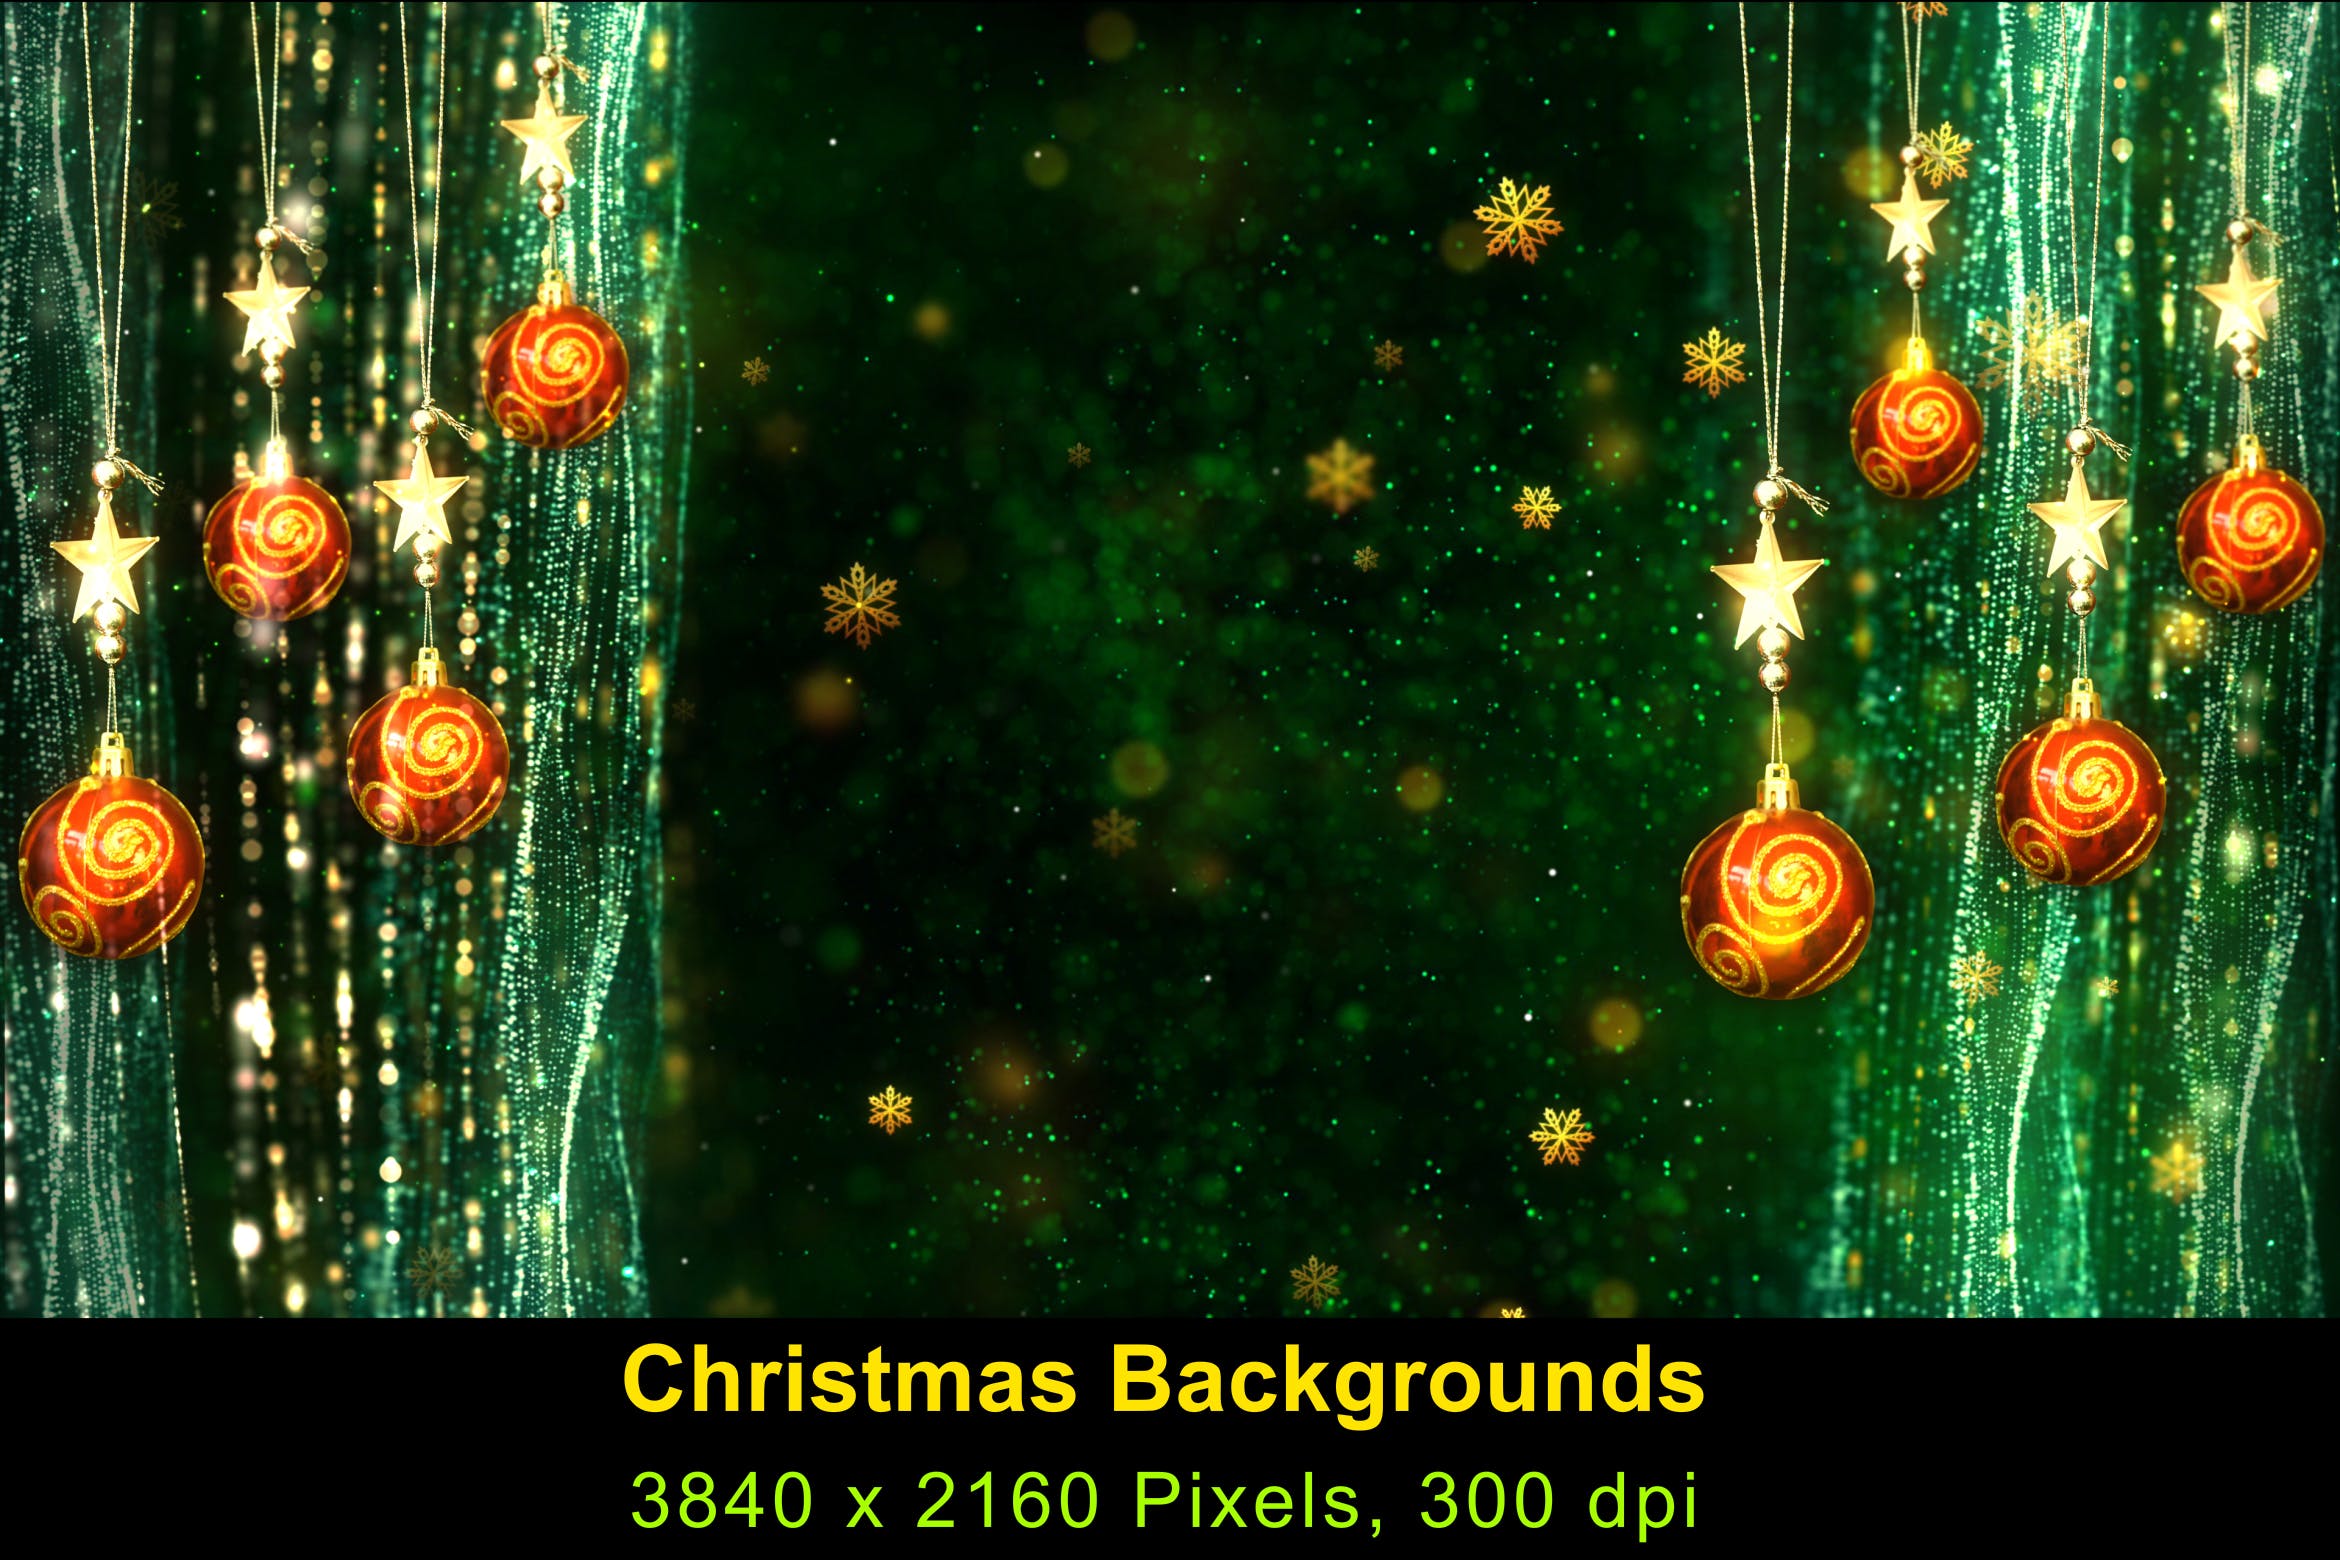 高清圣诞节灯饰背景素材v1 Christmas Background 1插图